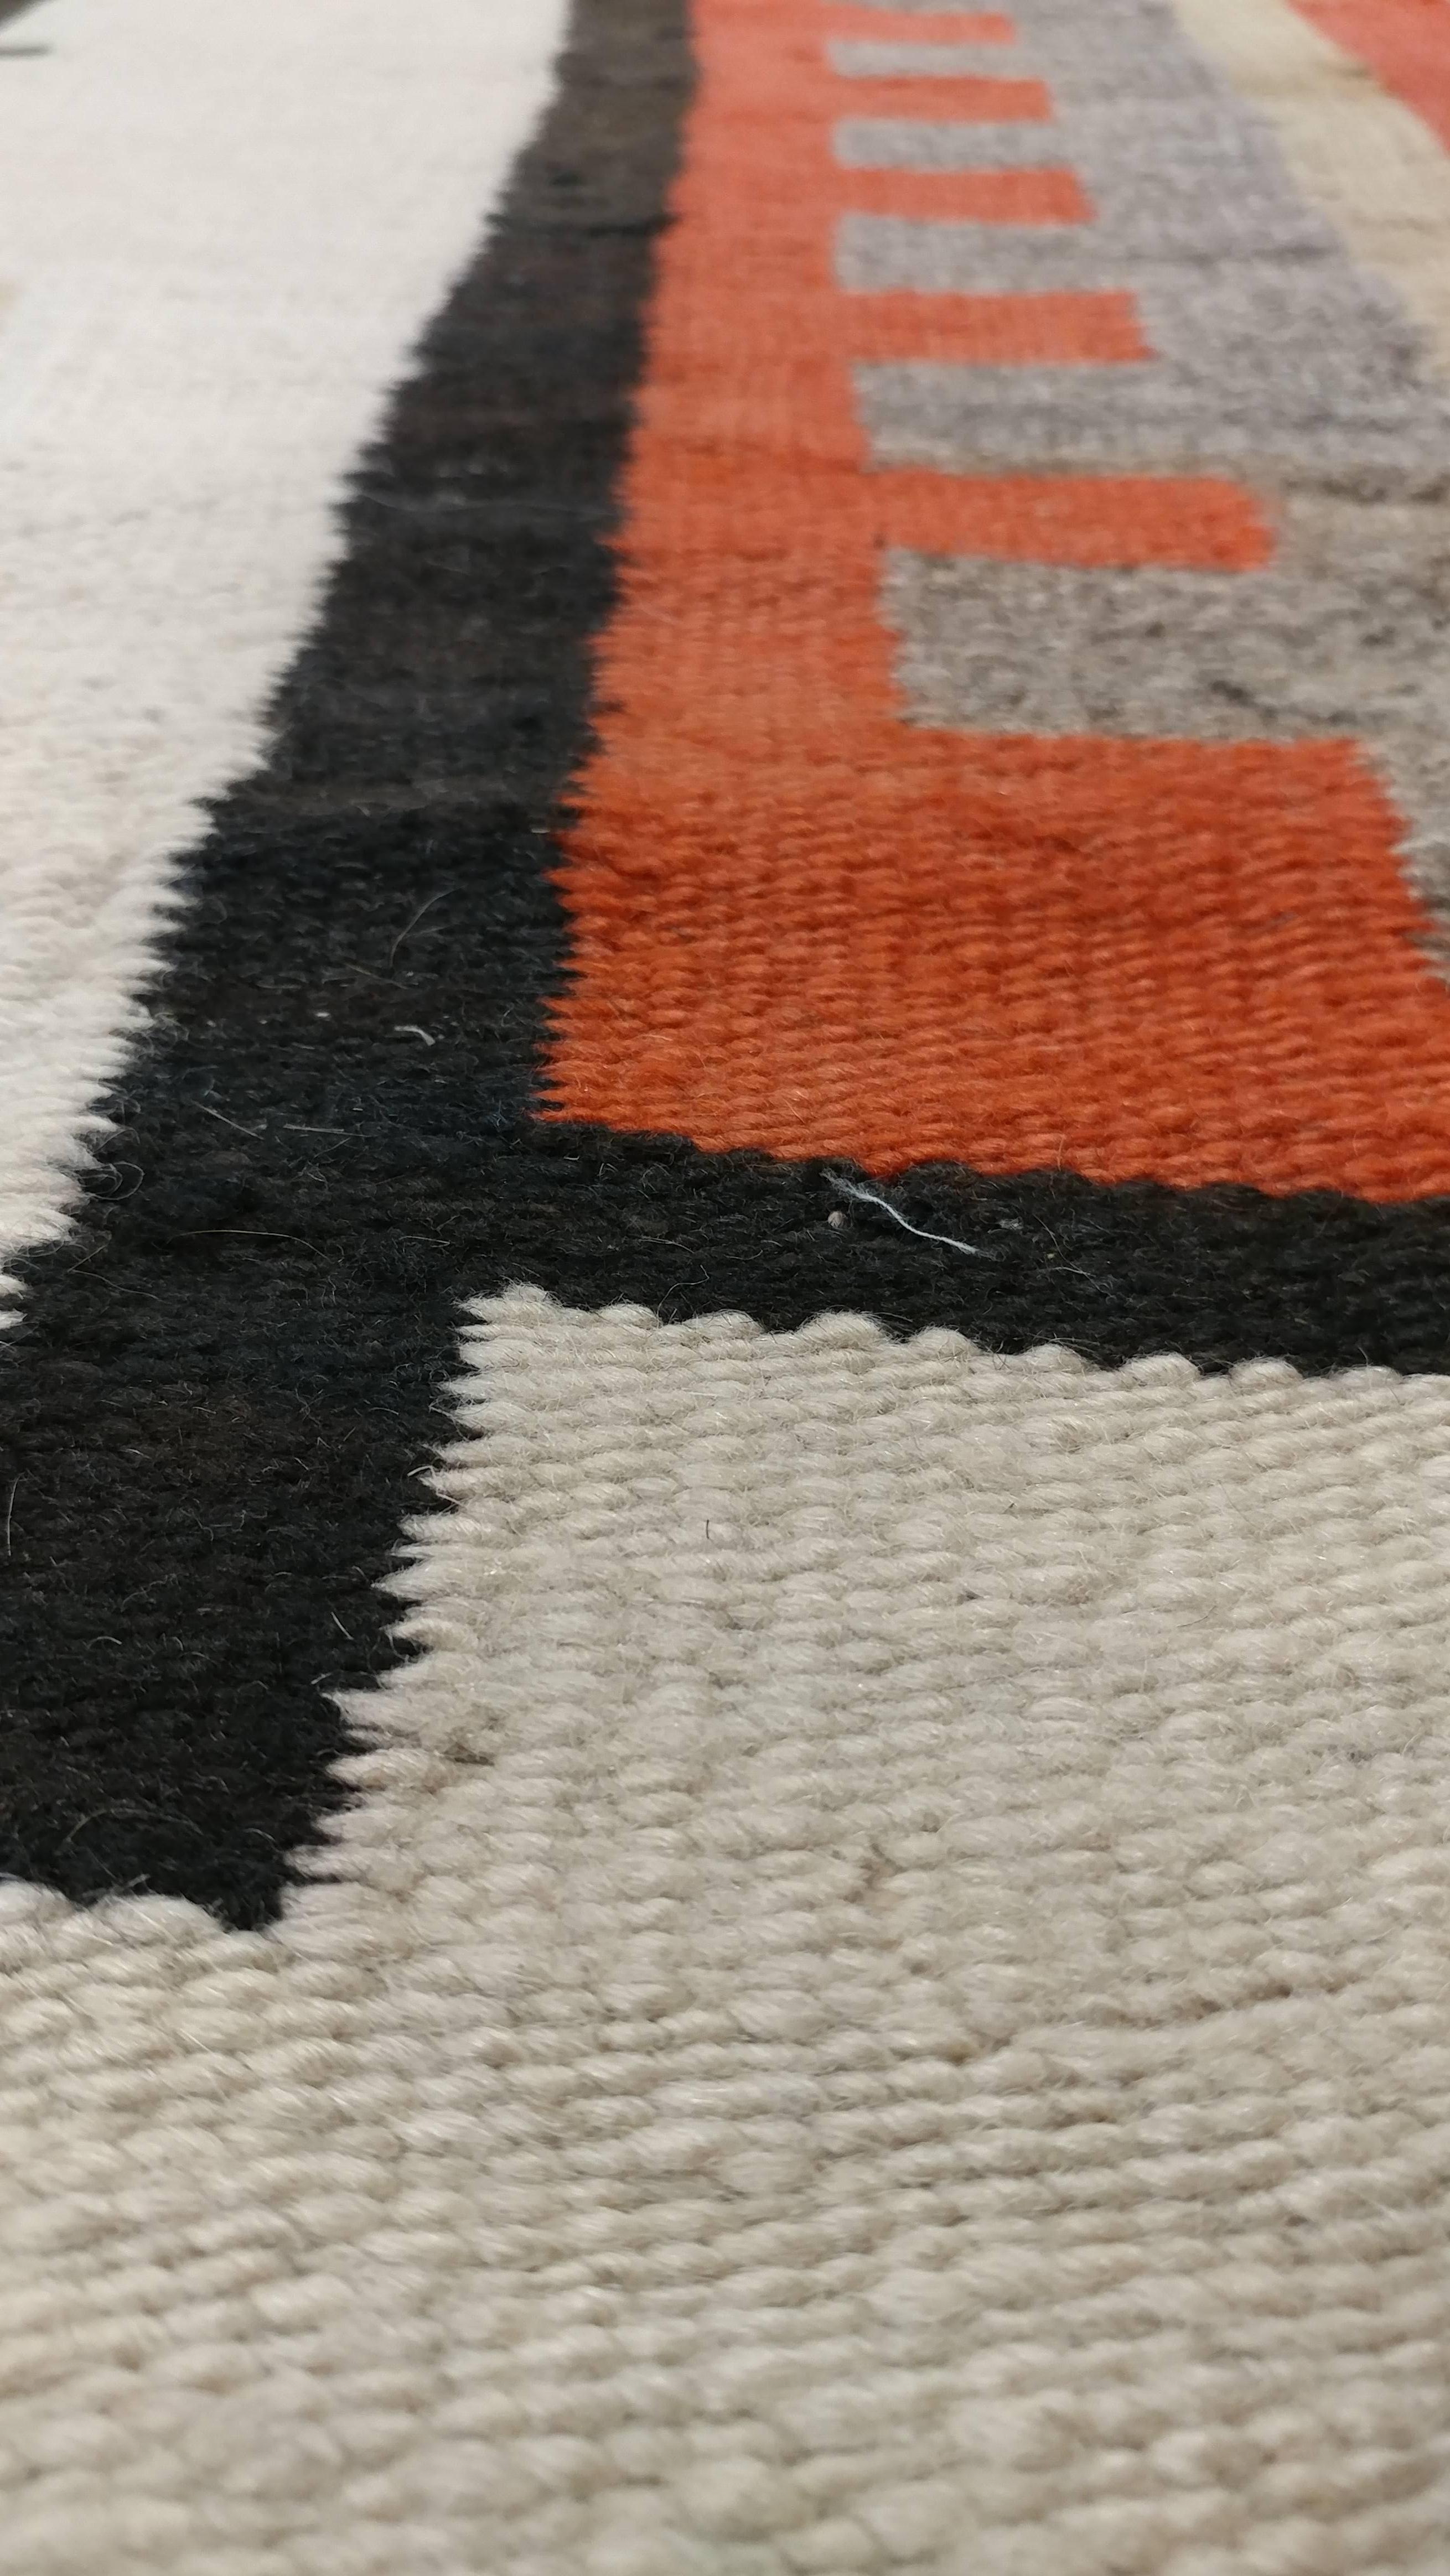 Antique Navajo Carpet, Folk Rug, Handmade Wool, Beige, Coral, Tan, Black 3